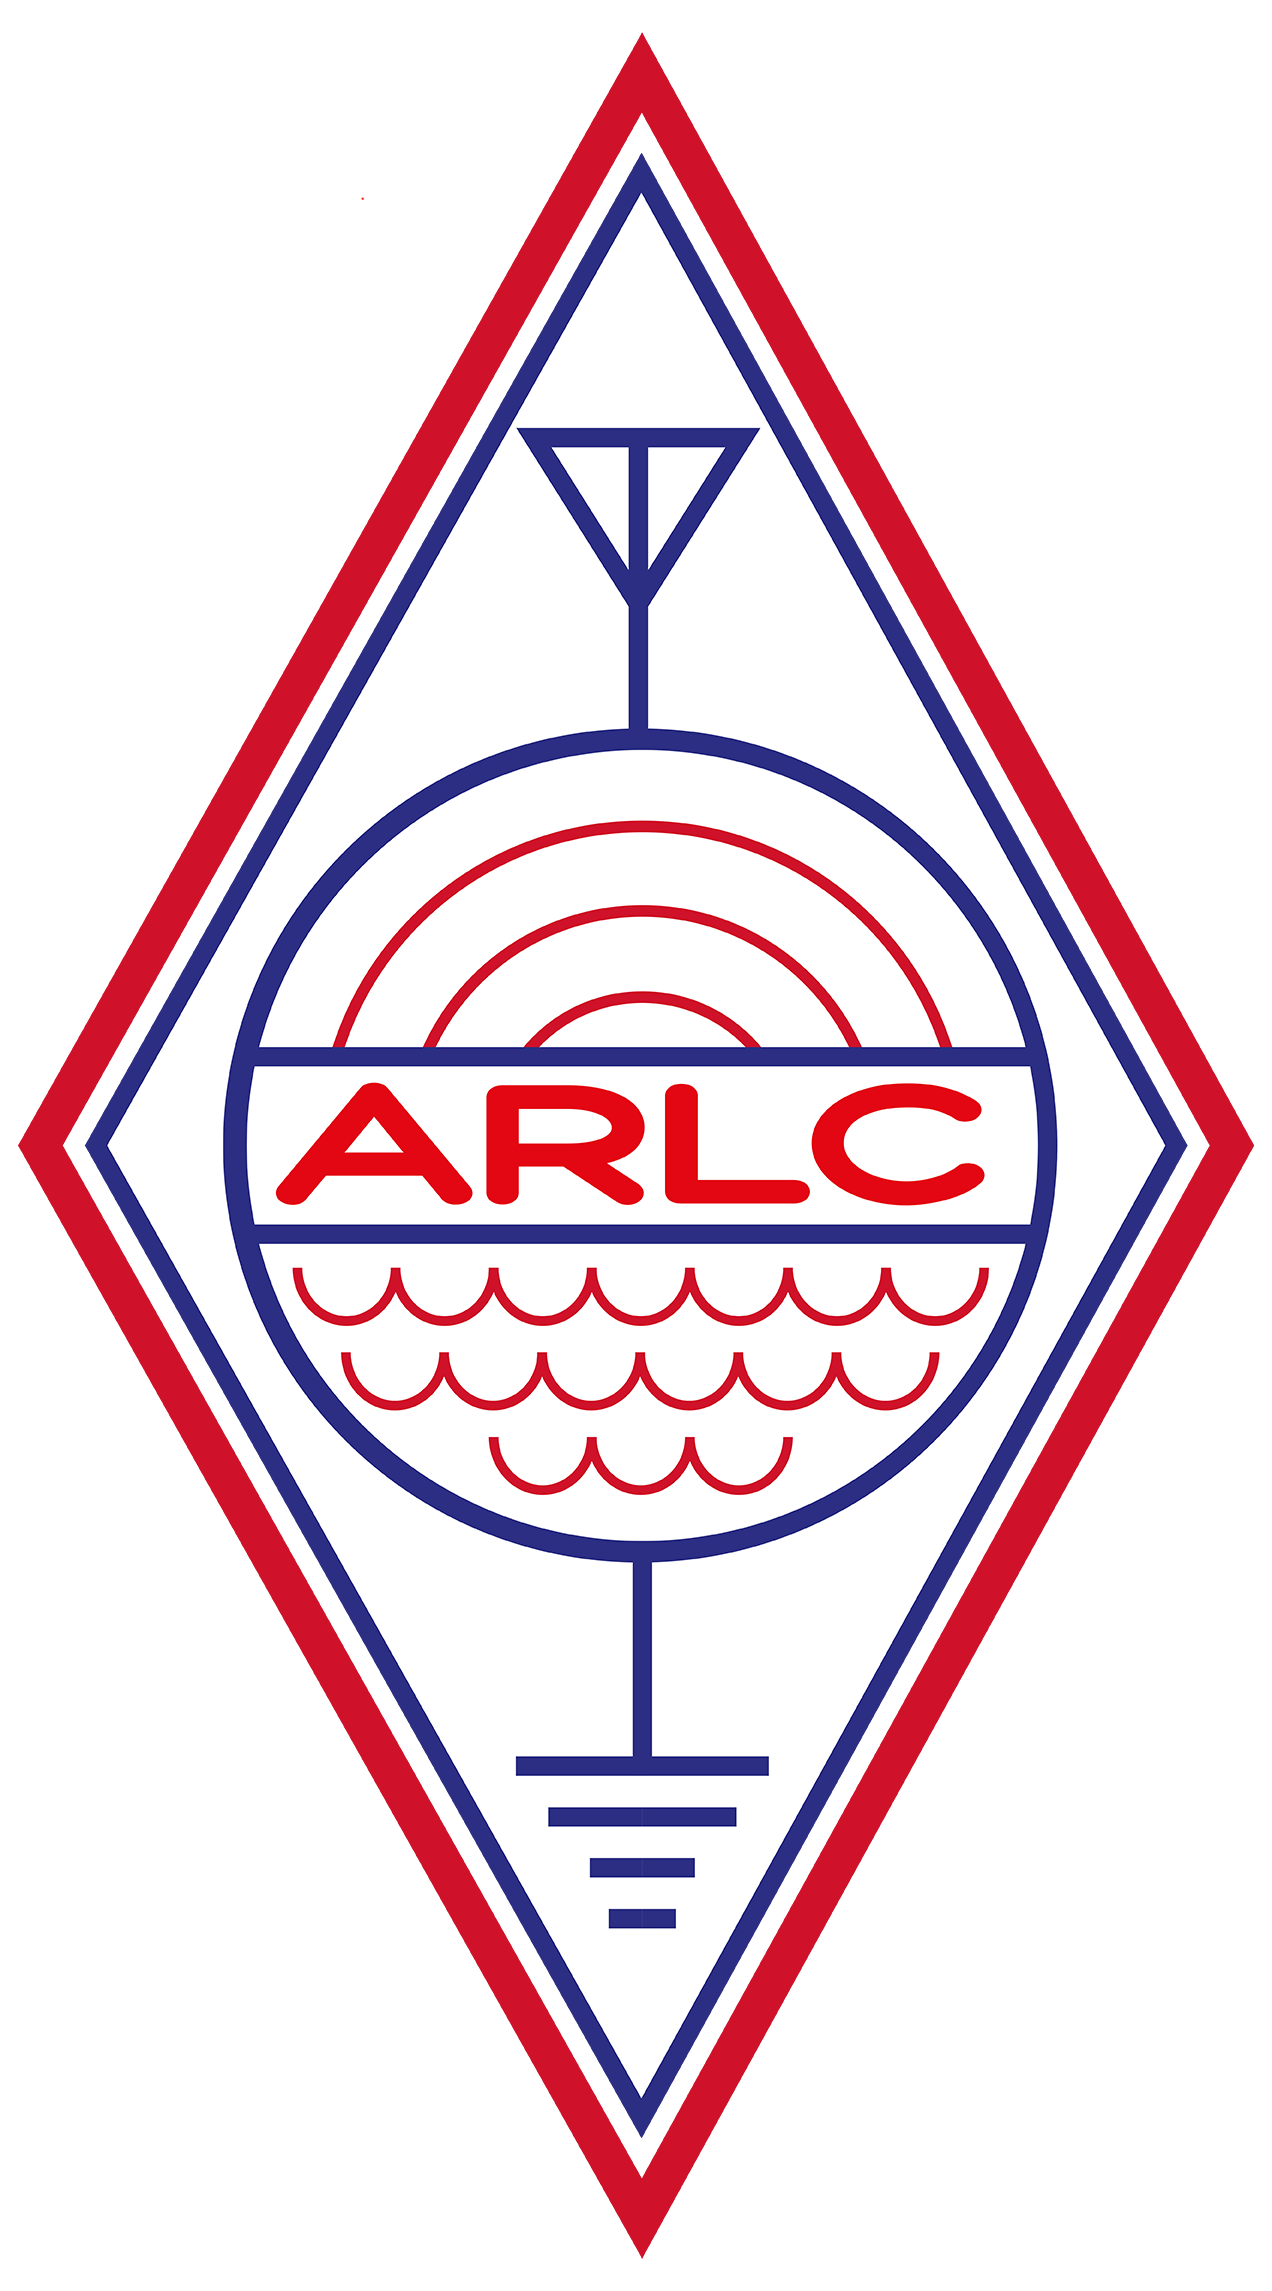 ARCB - Associação de Futebol de Botão